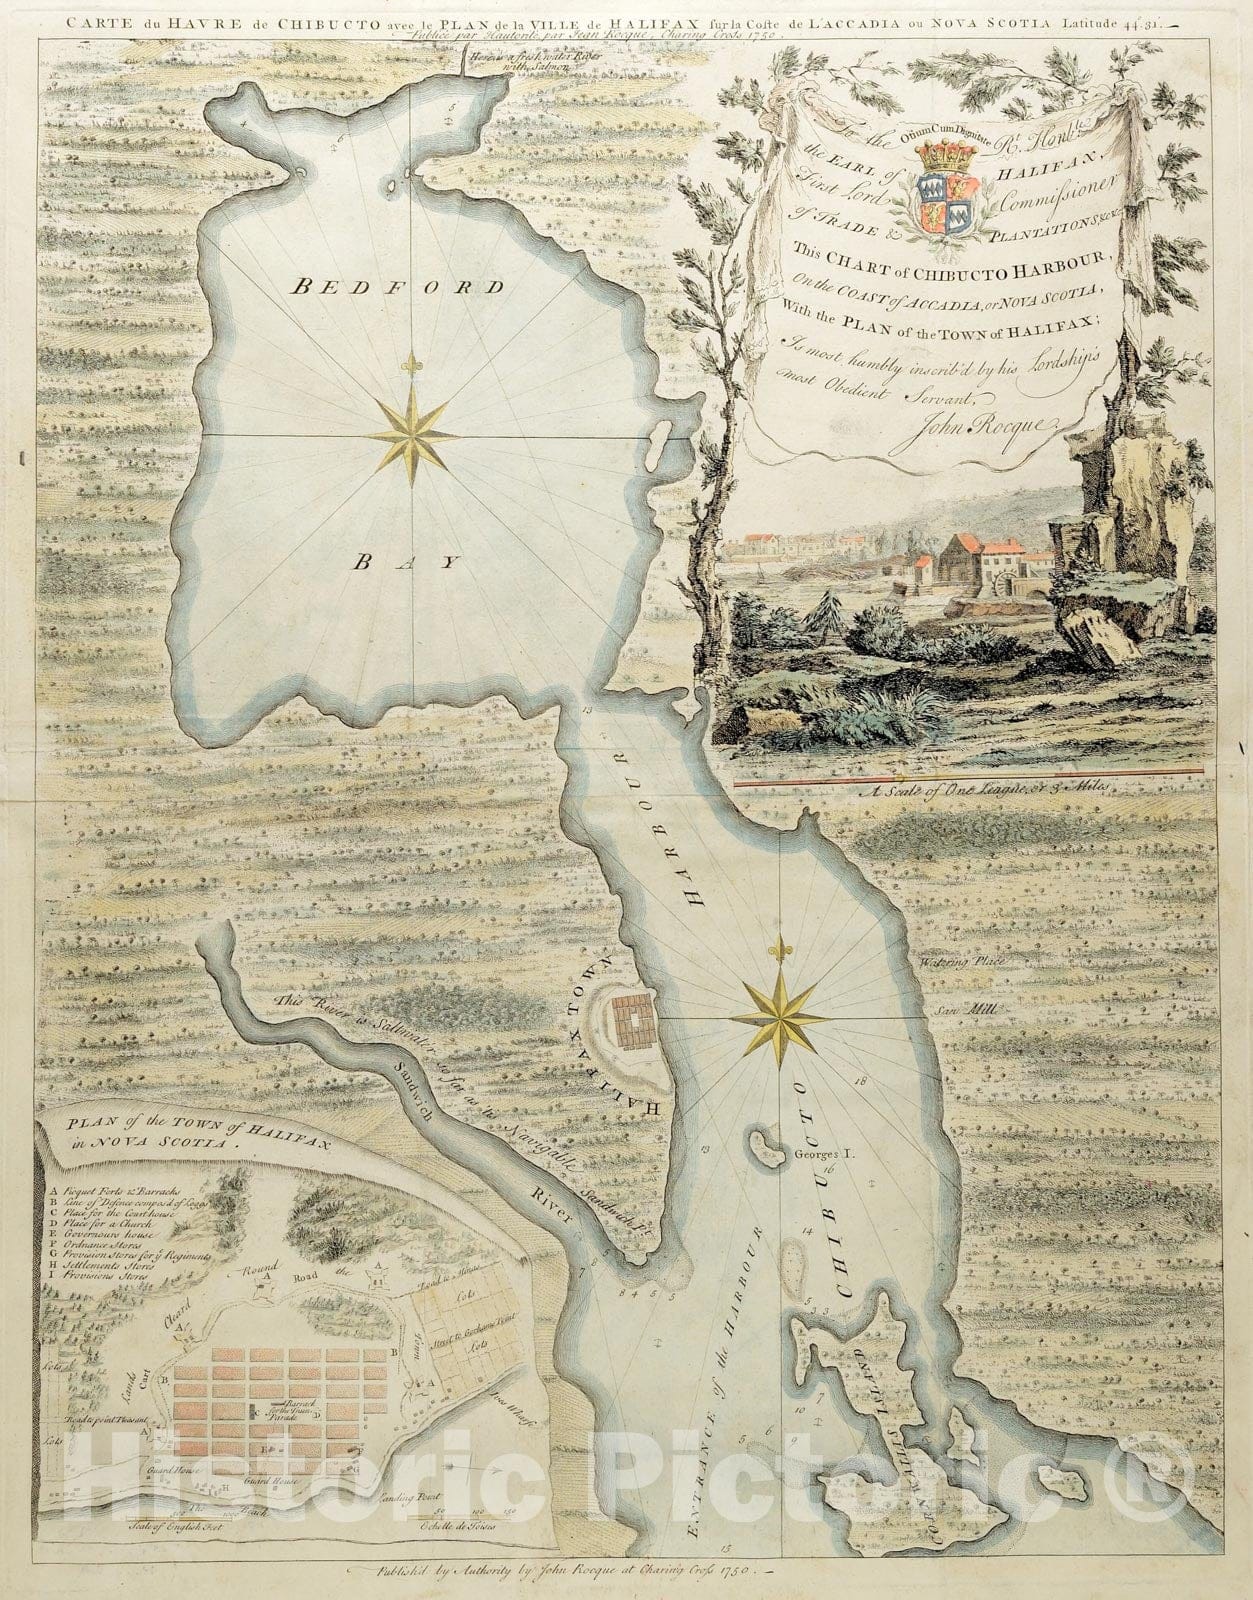 Historical Map, 1750 Carte du havre de Chibucto avec le Plan de la ville de Halifax sur la coste de l'Accadia ou Nova Scotia latitude 44AÂ° 31EÂ¹, Vintage Wall Art